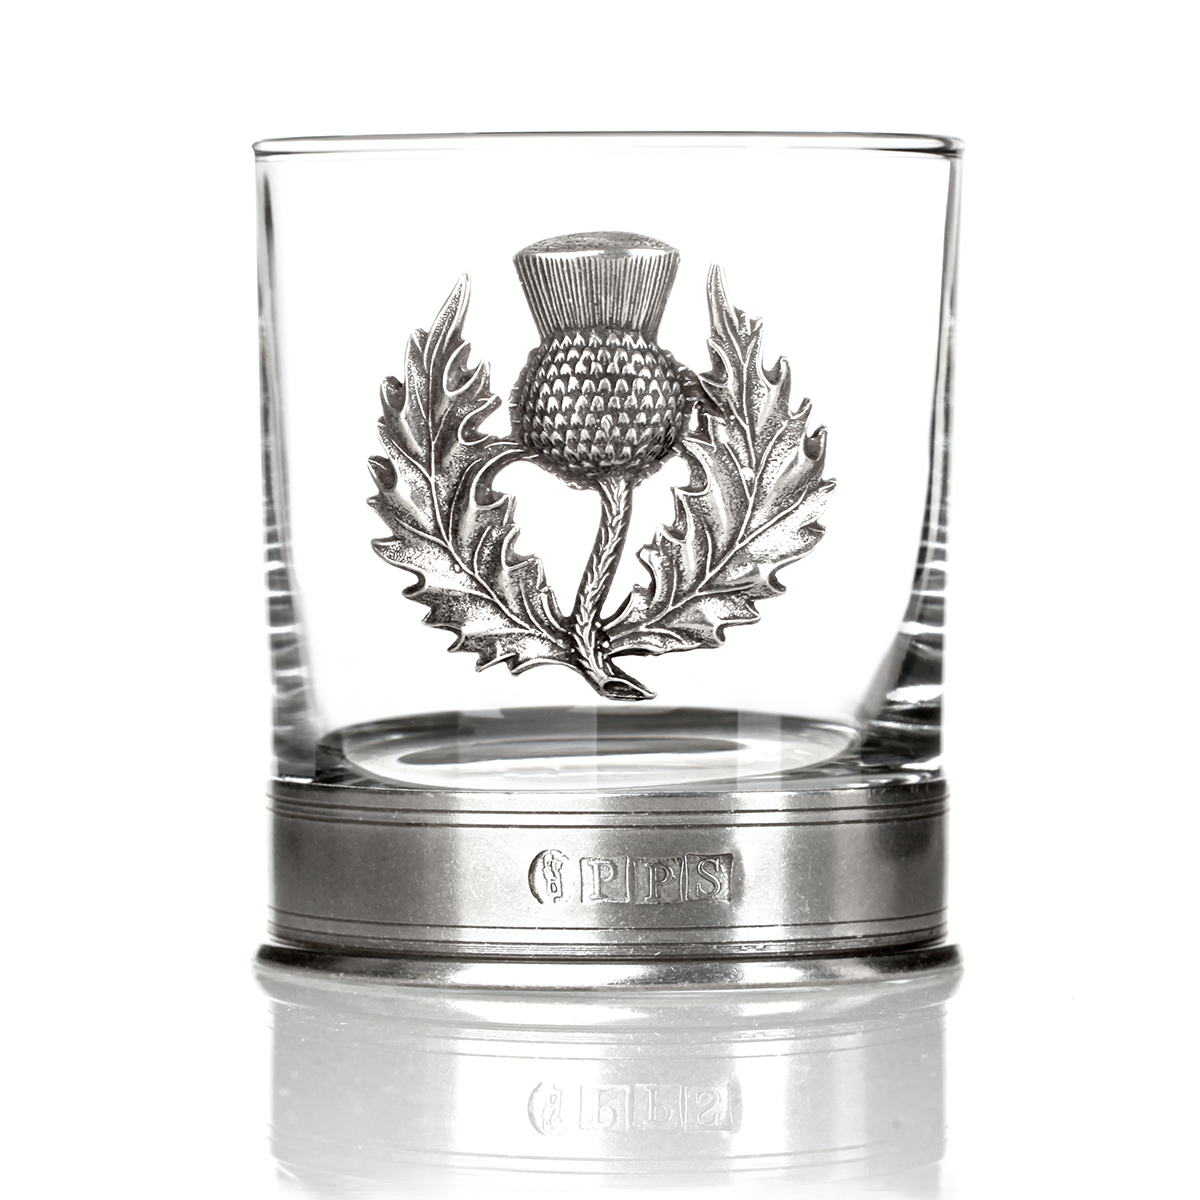 Scottish Thistle Tumbler - Handgefertigtes Whisky Glas mit schottischer Distel aus Zinn